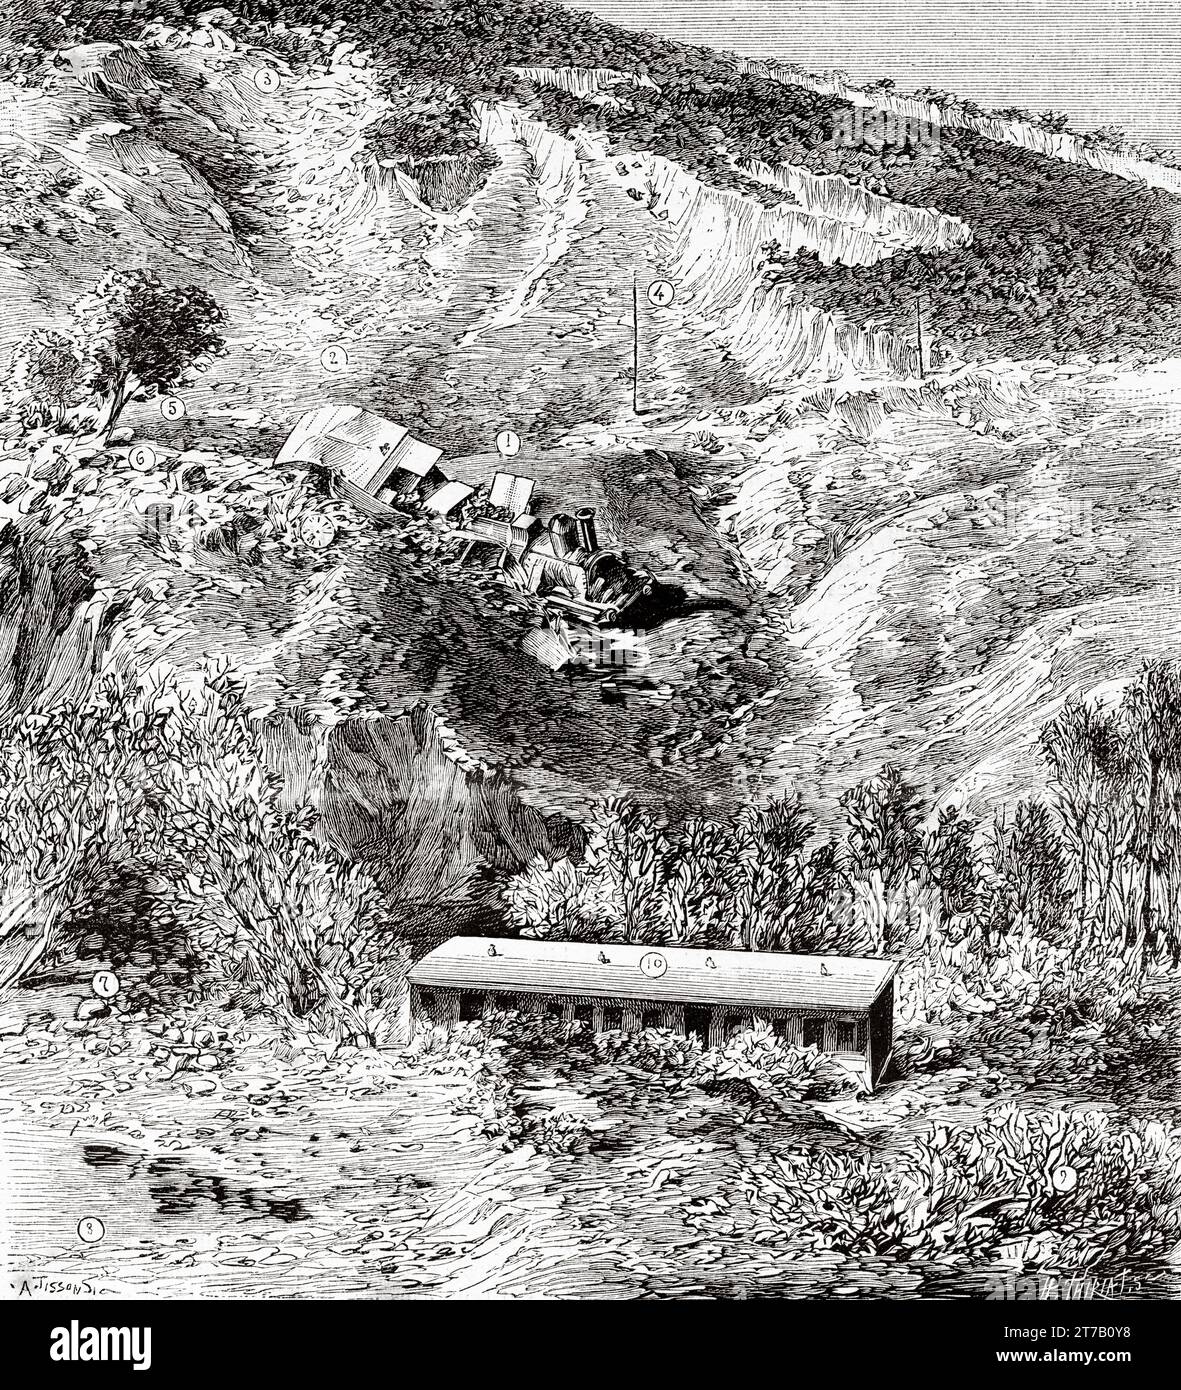 Catastrophe ferroviaire, catastrophe de Sisteron 12 novembre 1886, Faubourg de la Balme, France. Illustration ancienne de la nature 1887 Banque D'Images